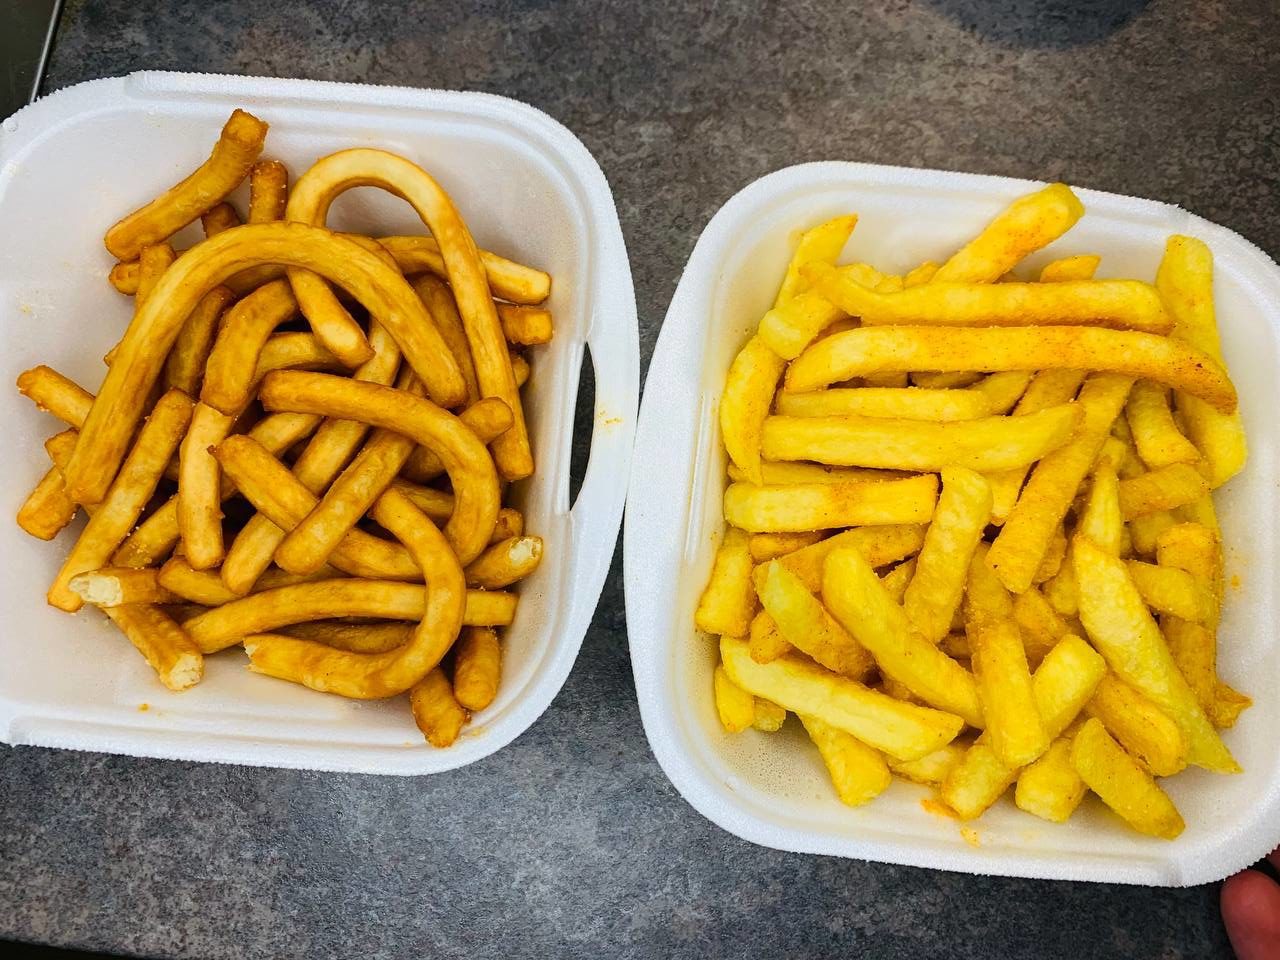 Diner Fries (links) im Vergleich zu normalen Pommes (rechts)